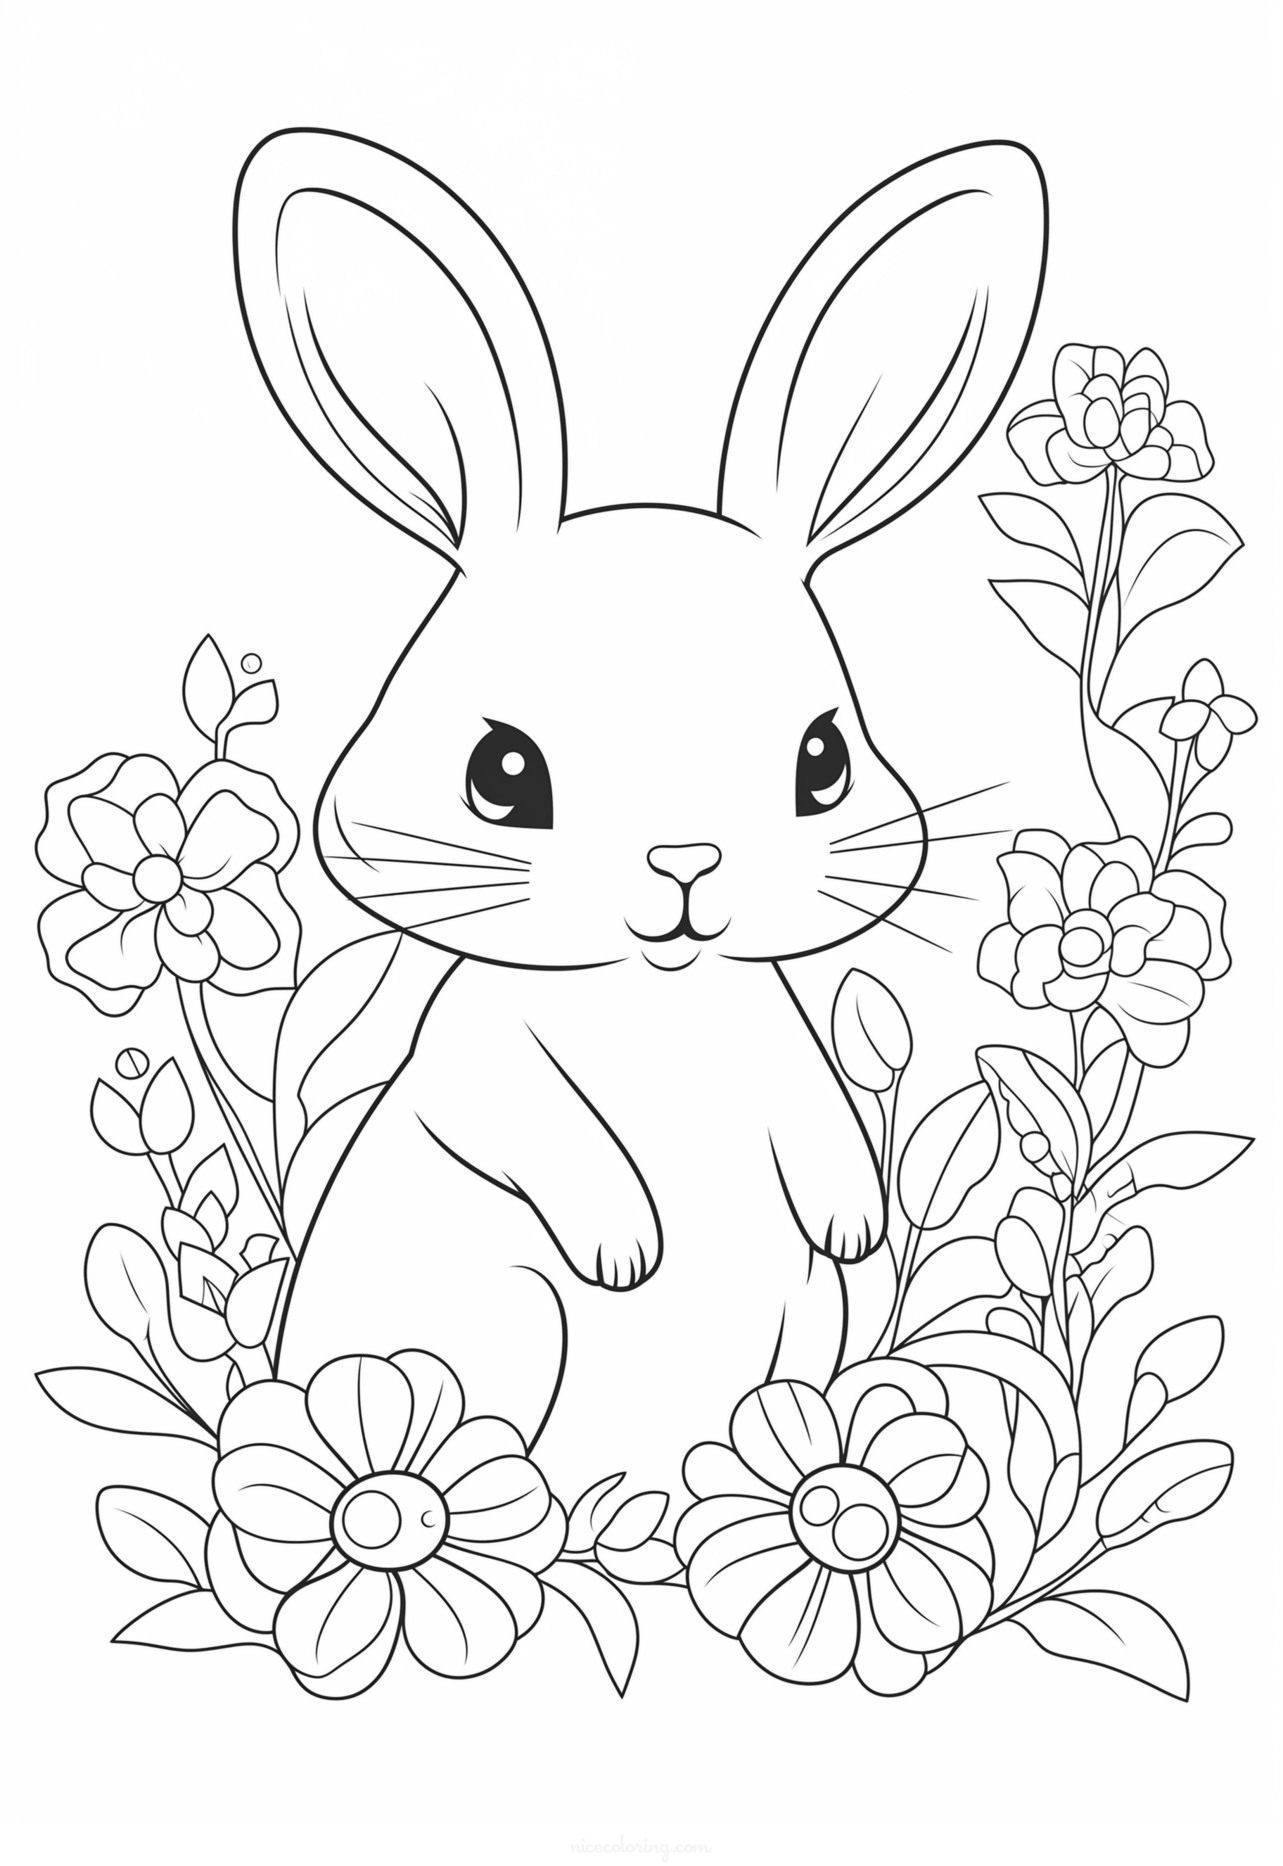 ระบายสีกระต่ายท่ามกลางดอกไม้